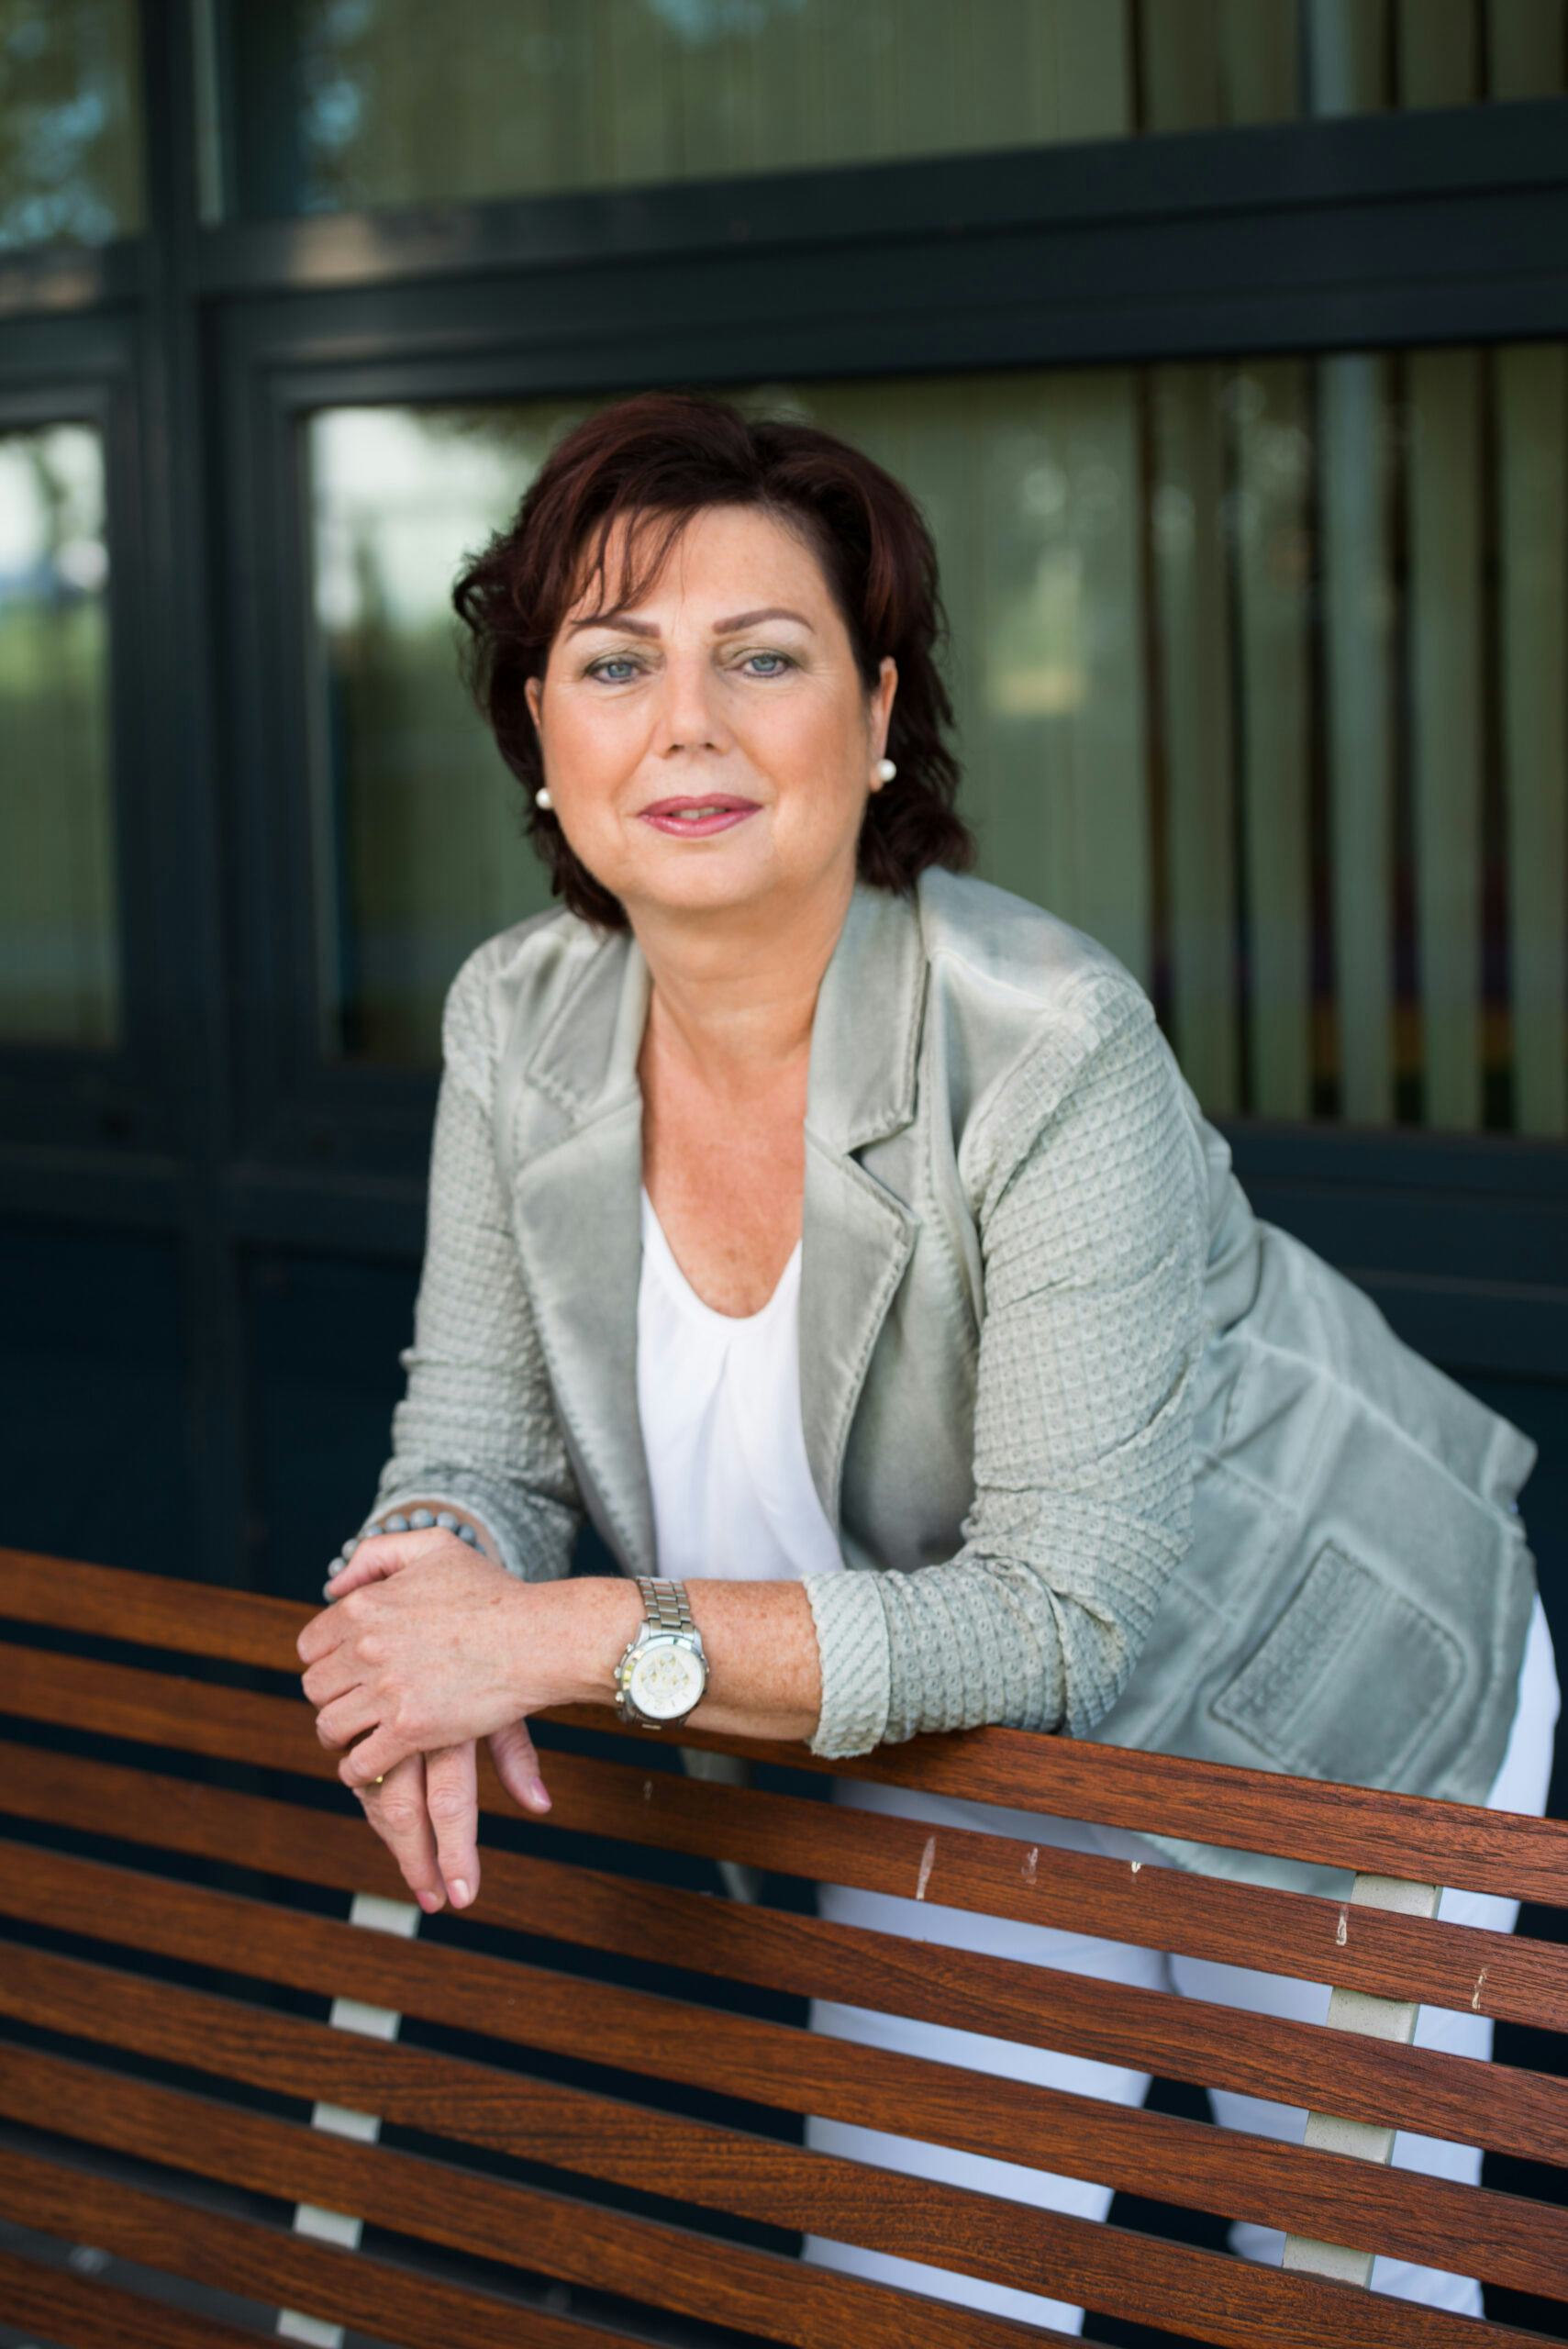 Geerie Lieferink: 'Wij zijn dé vraagbaak voor intermediairs'